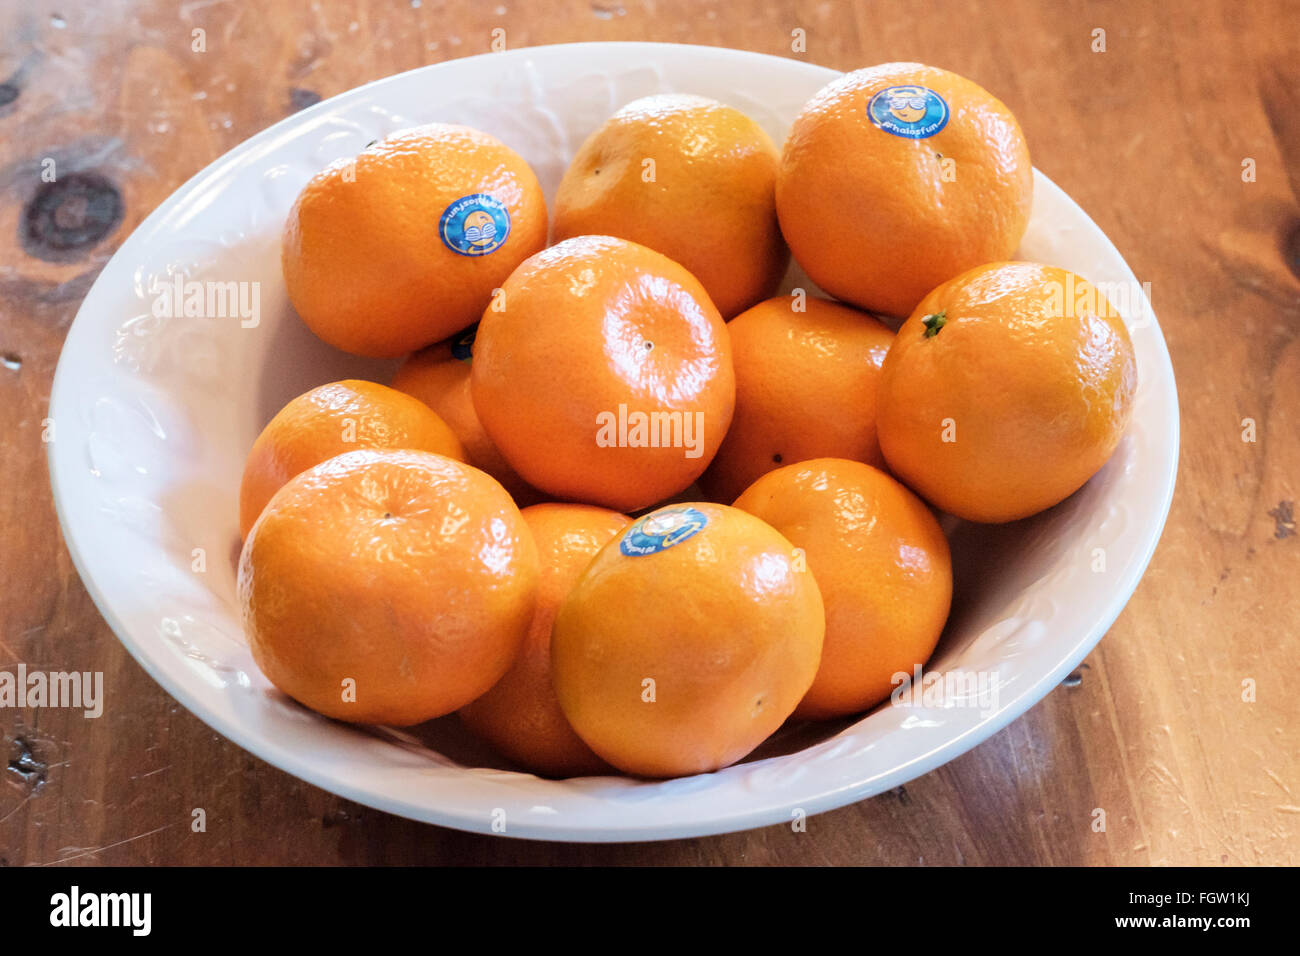 Mandarin oranges, Citrus reticulata, in a white bowl. Stock Photo